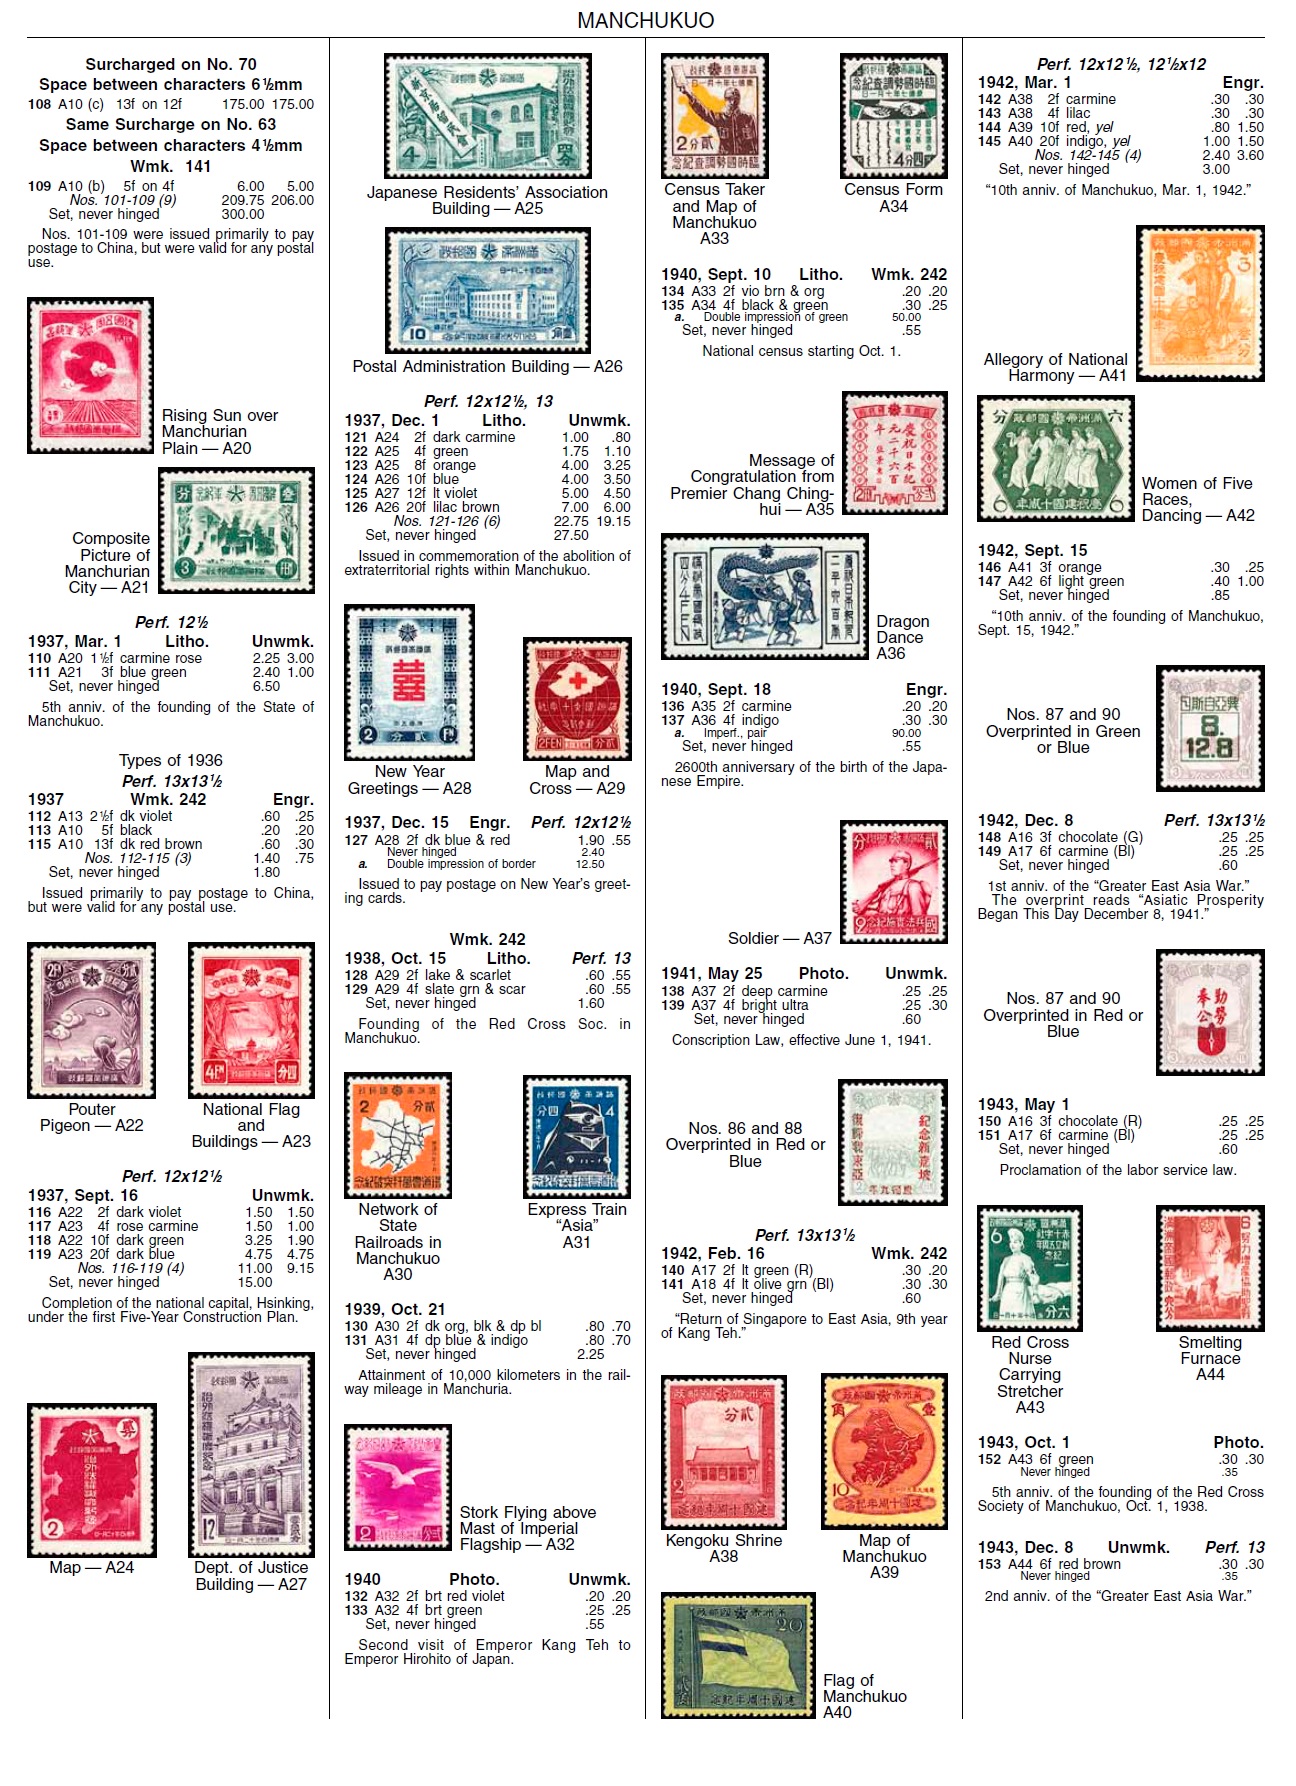 Manchukuo Stamps  Quick Identifier.jpg